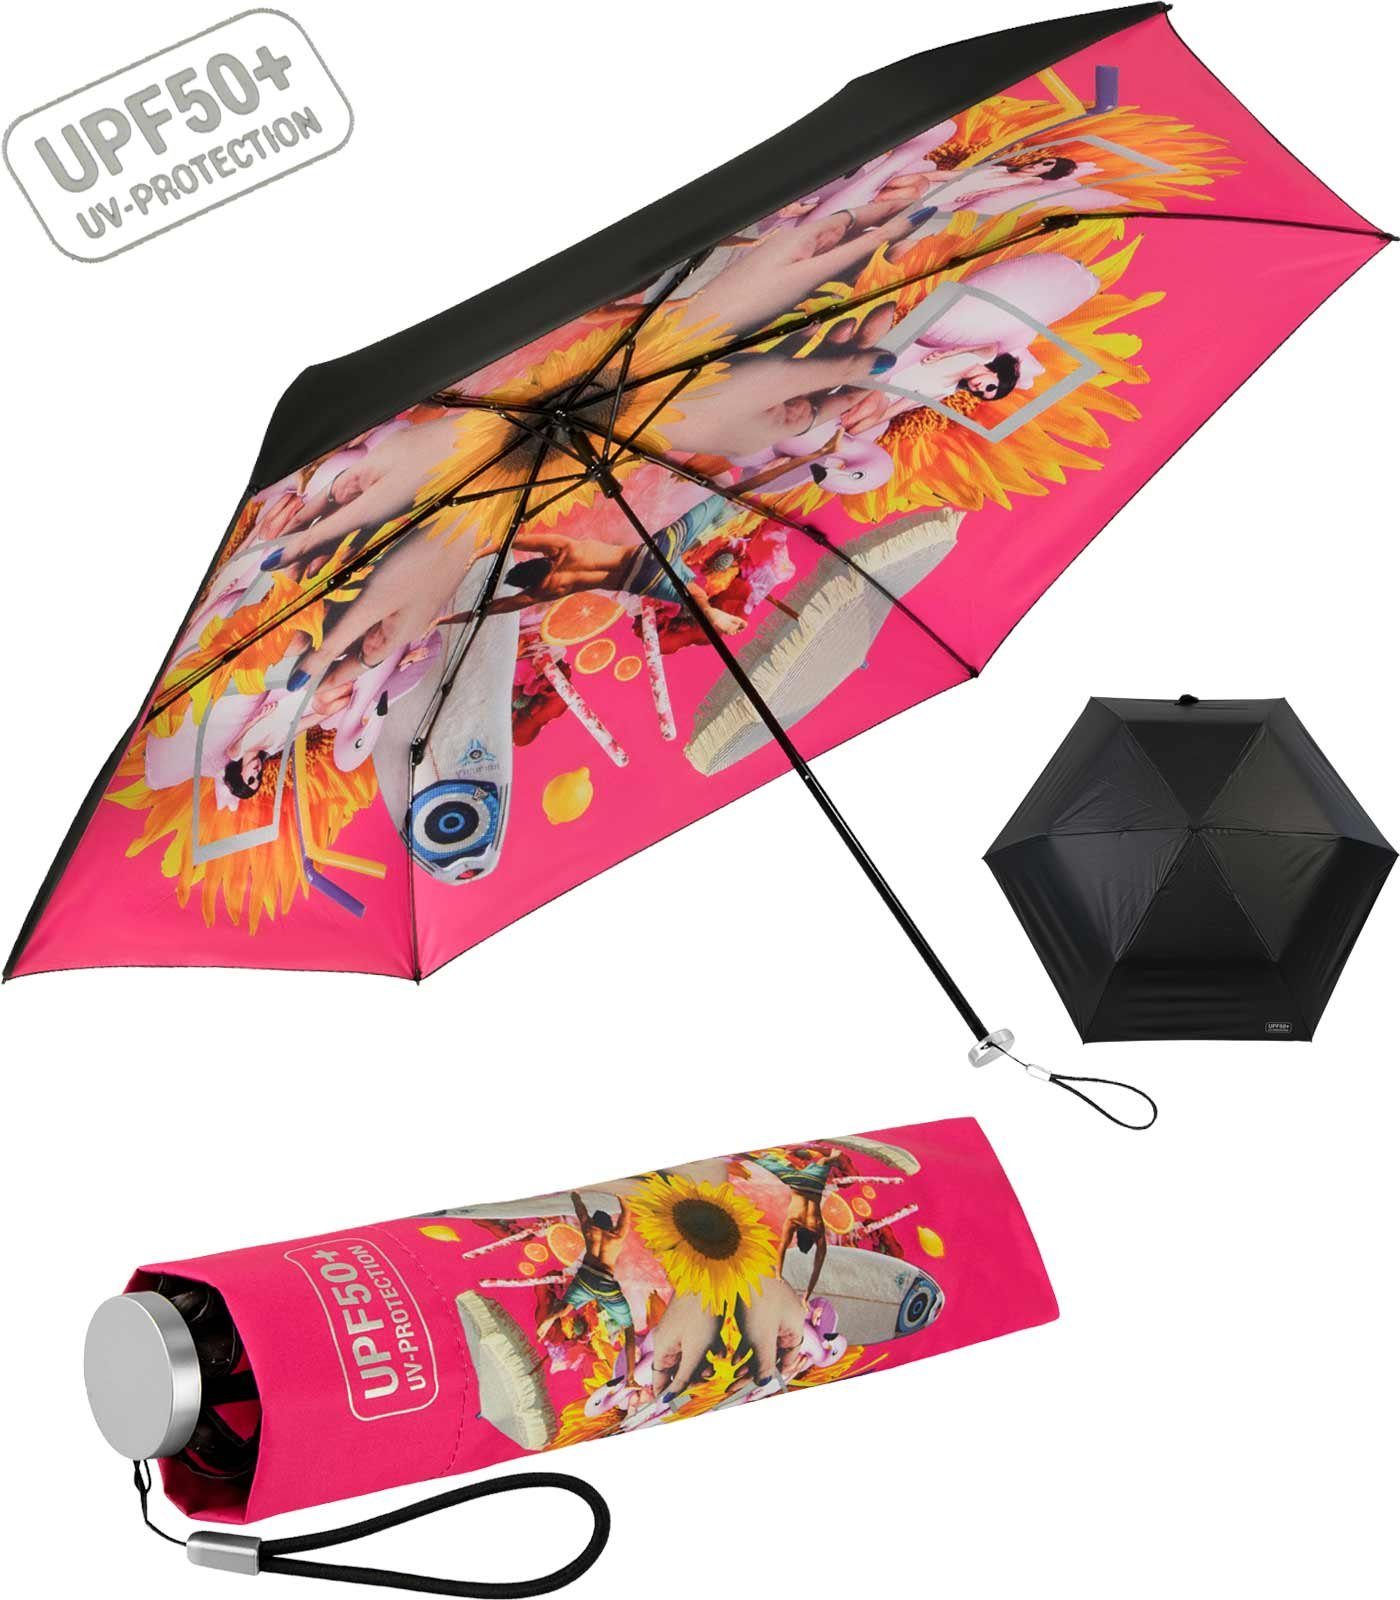 bedruckt UV-protection Supermini von lichtundurchlässiges Schirm, Innen - bedruckt, Impliva Taschenregenschirm Dach, leichter extrem pink UPF50+ miniMAX®